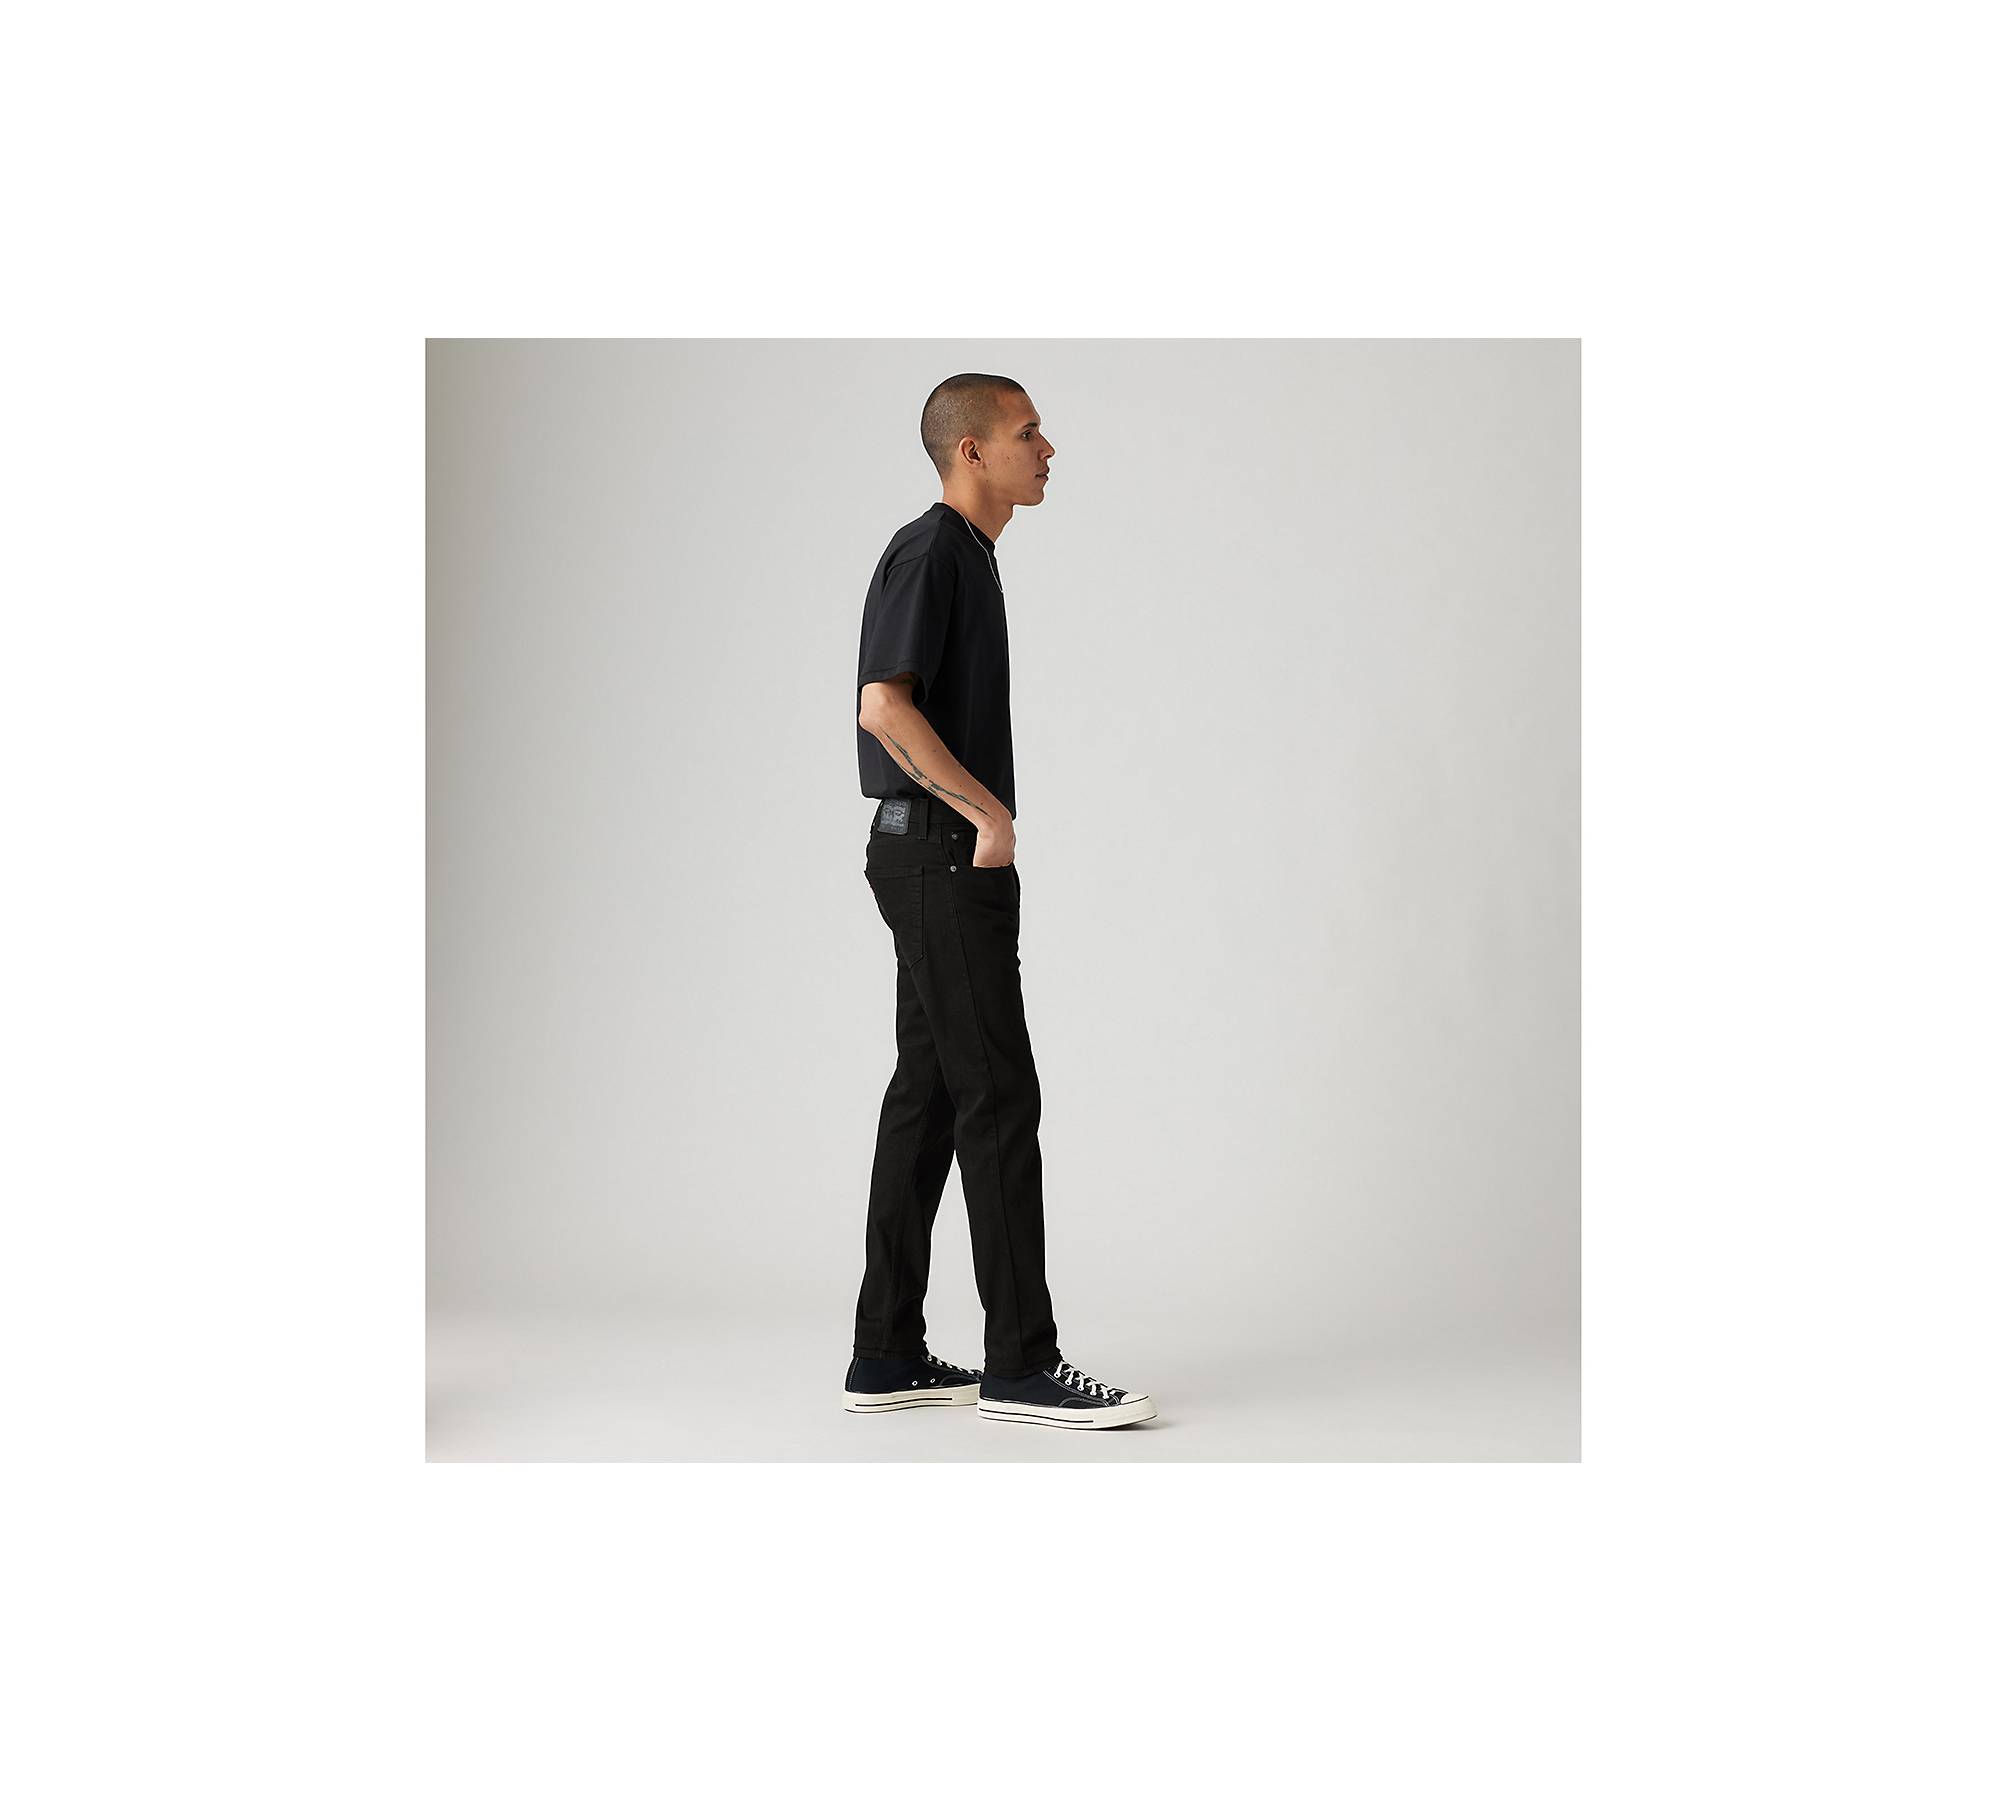 512™ Slim Taper Levi's® Flex Men's Jeans - Black